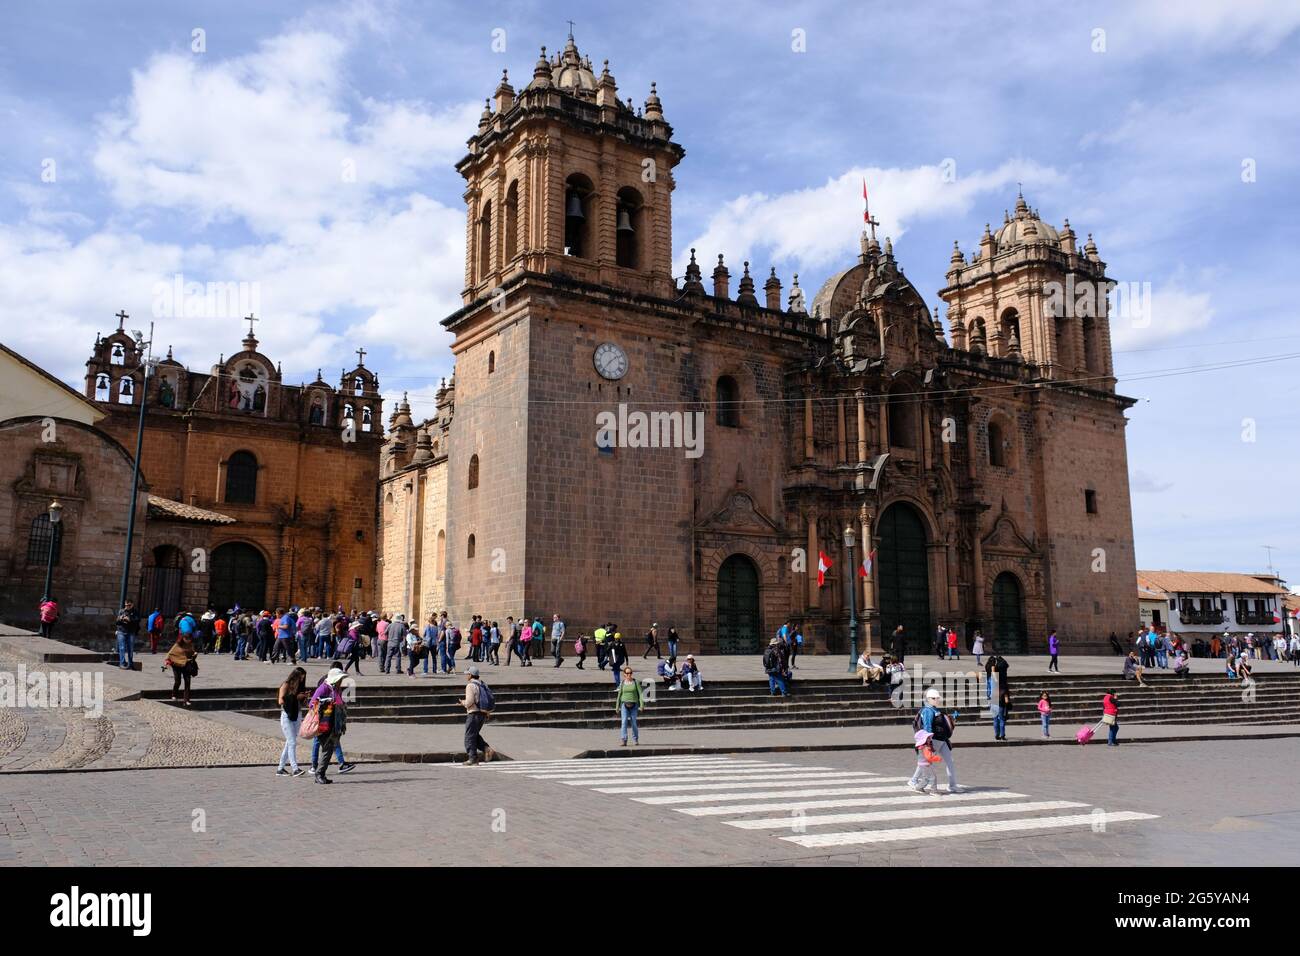 Perù Cusco - Plaza De Armas vista della Catedral del Cuzco - Cattedrale di Cusco Foto Stock